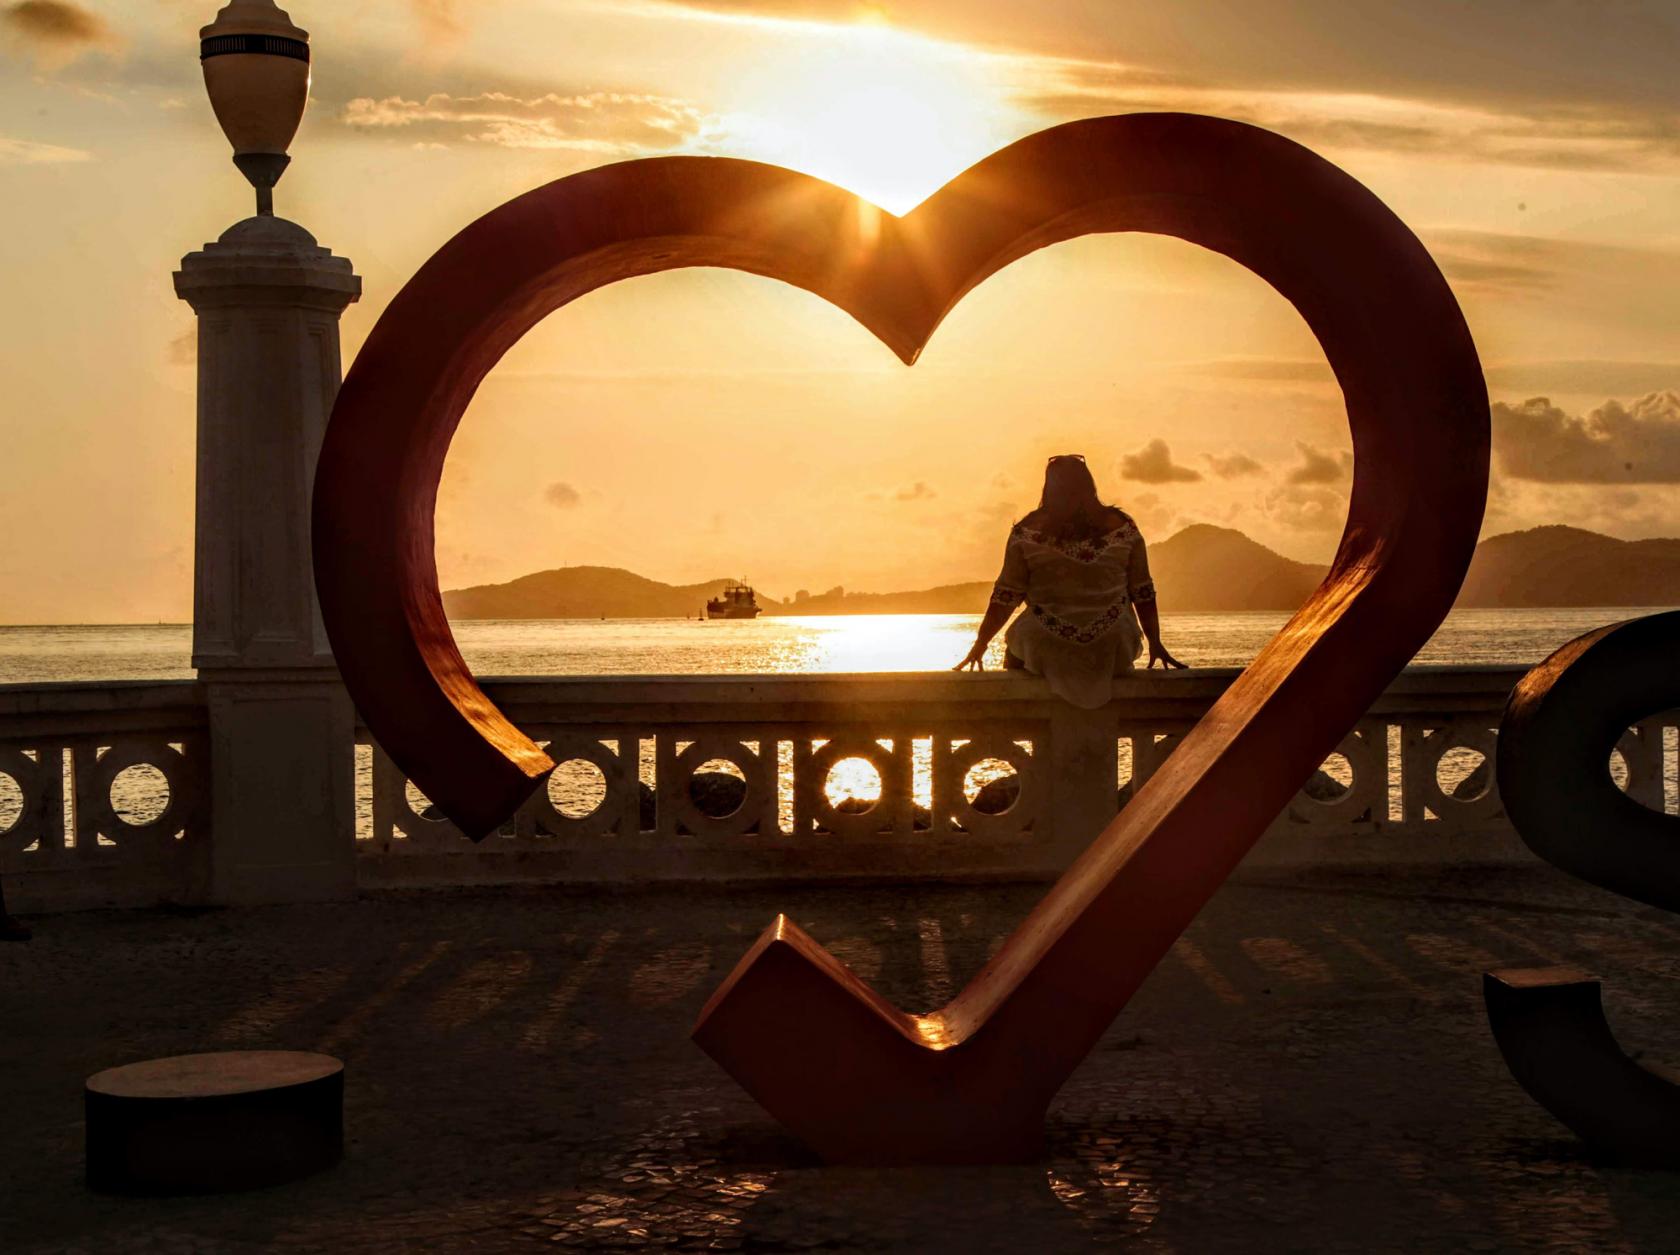 Estrutura em formato de coração na NOva POnta da Praia, em frete a mureta. Há uma pessoa sentada na mureta. O sol está se pondo ao fundo. #Paratodosverem